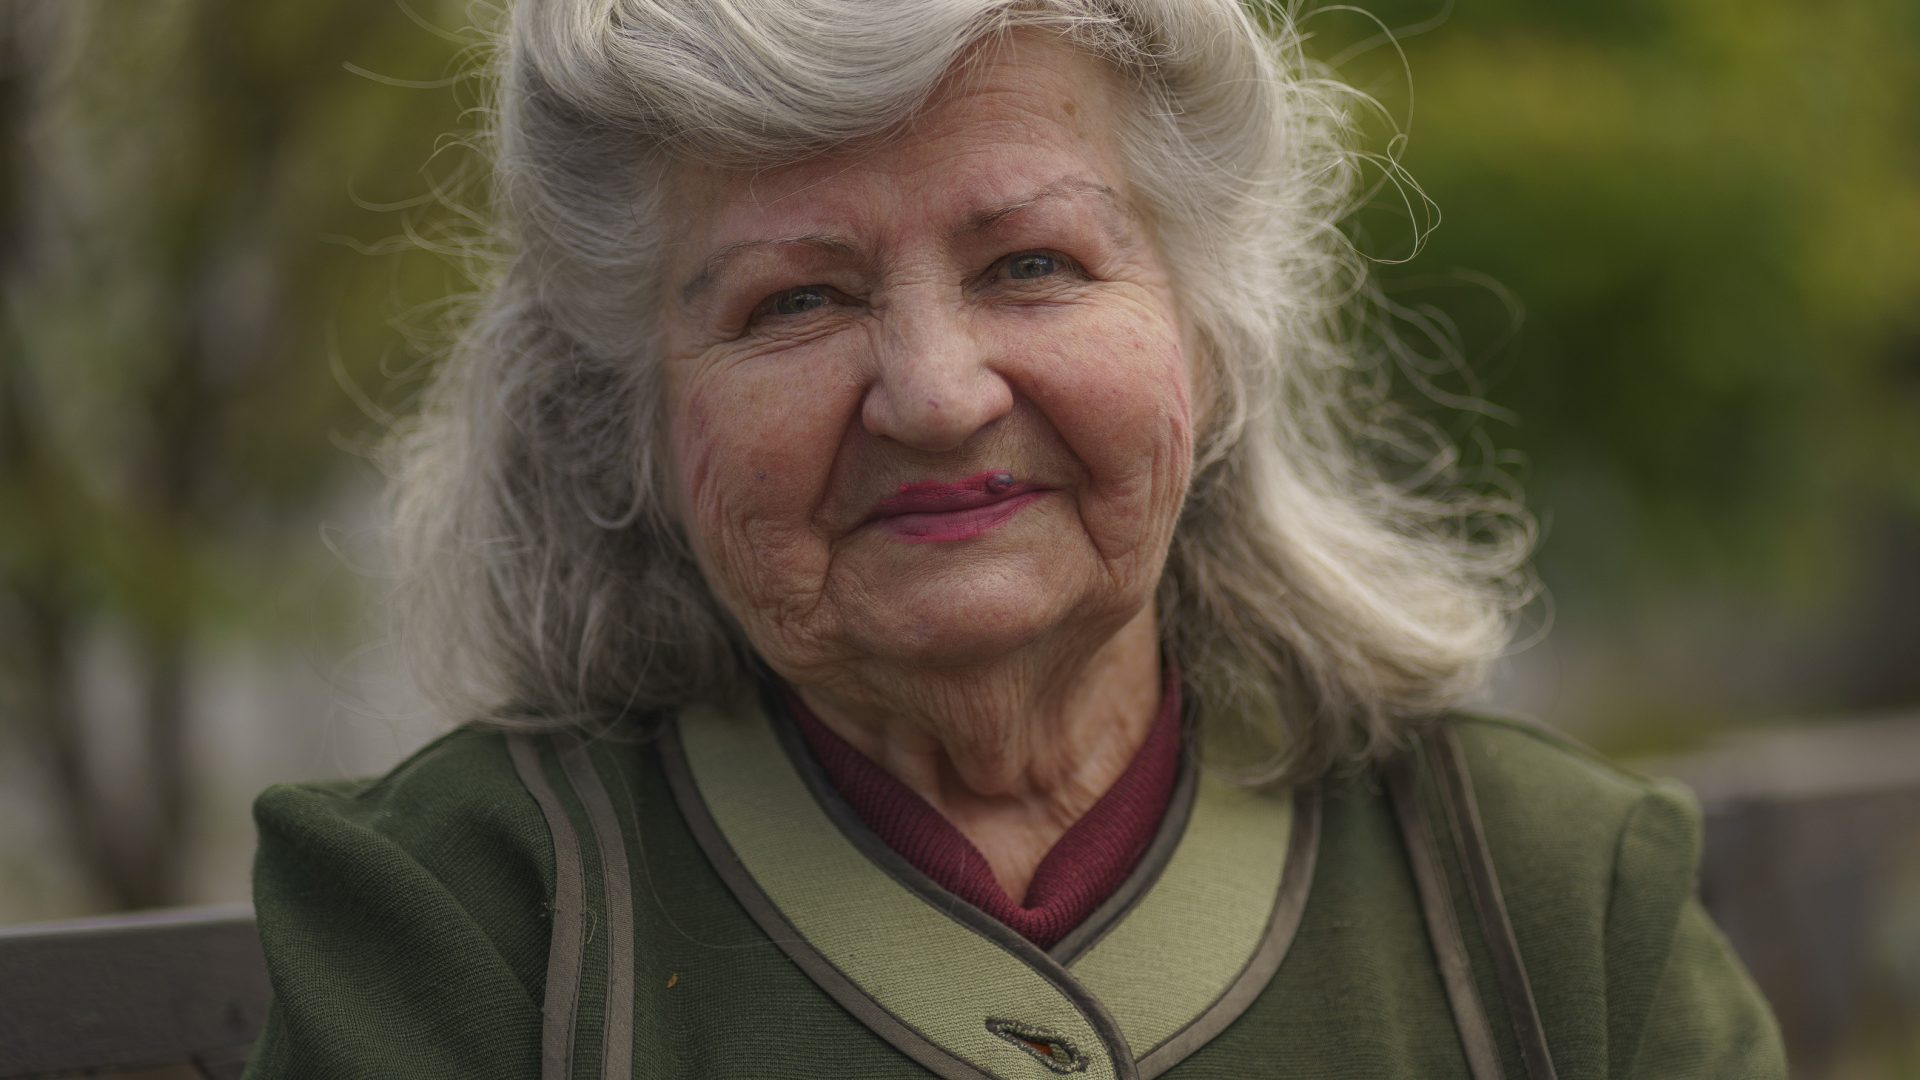 Older people in Ukraine